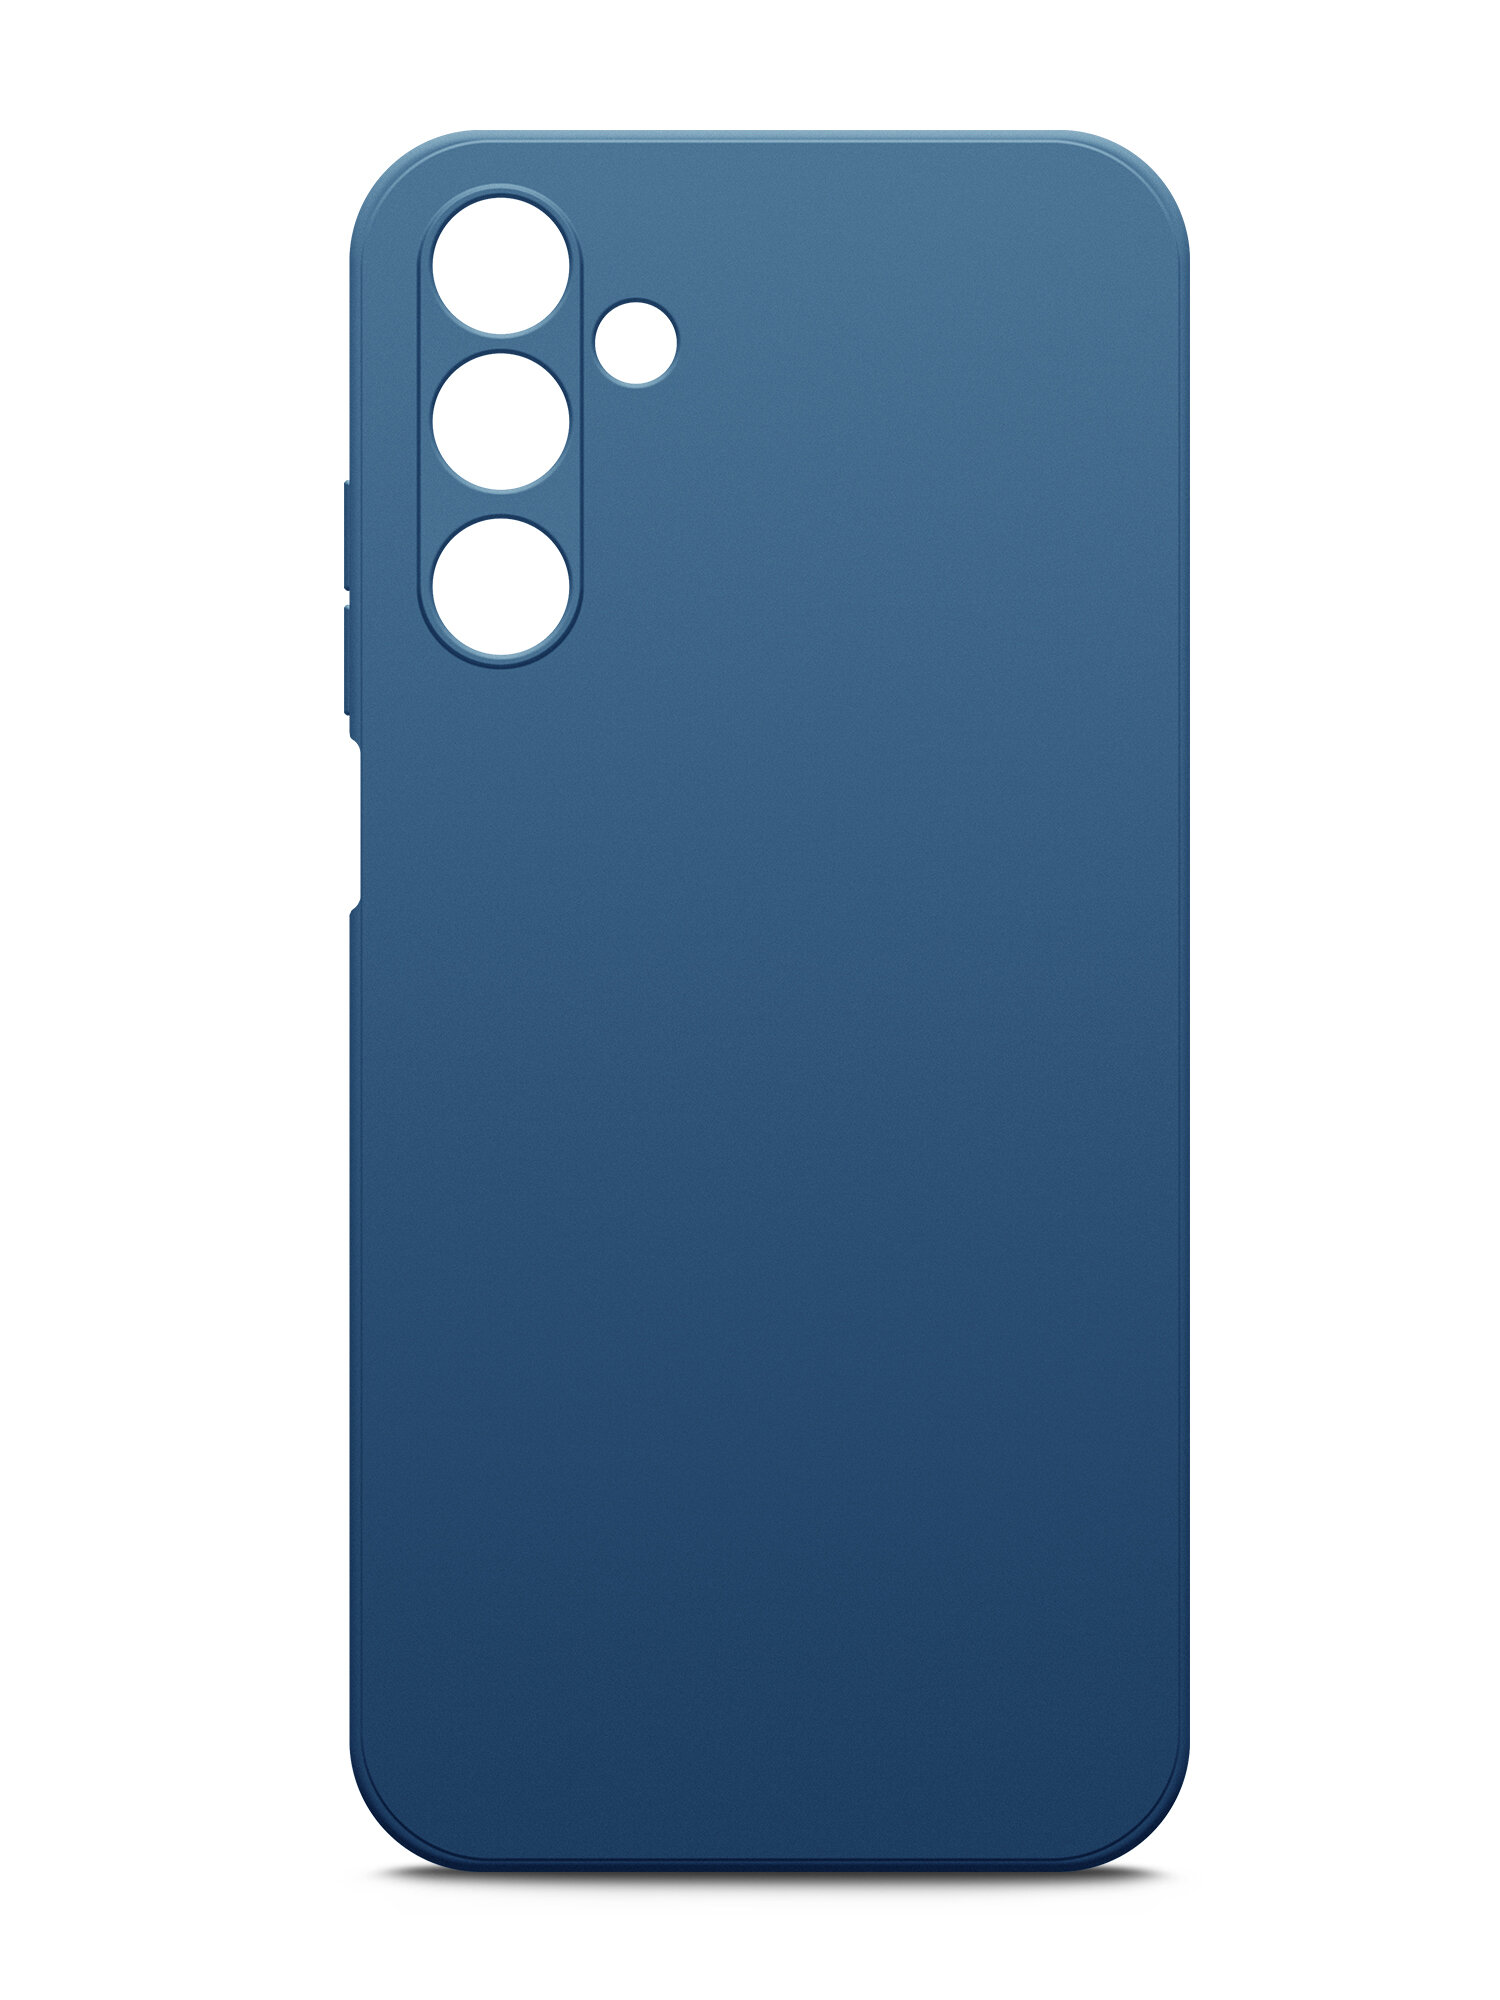 Чехол на Samsung Galaxy A25 (Самсунг Галакси А25) синий силиконовый с защитной подкладкой из микрофибры Microfiber Case, Brozo